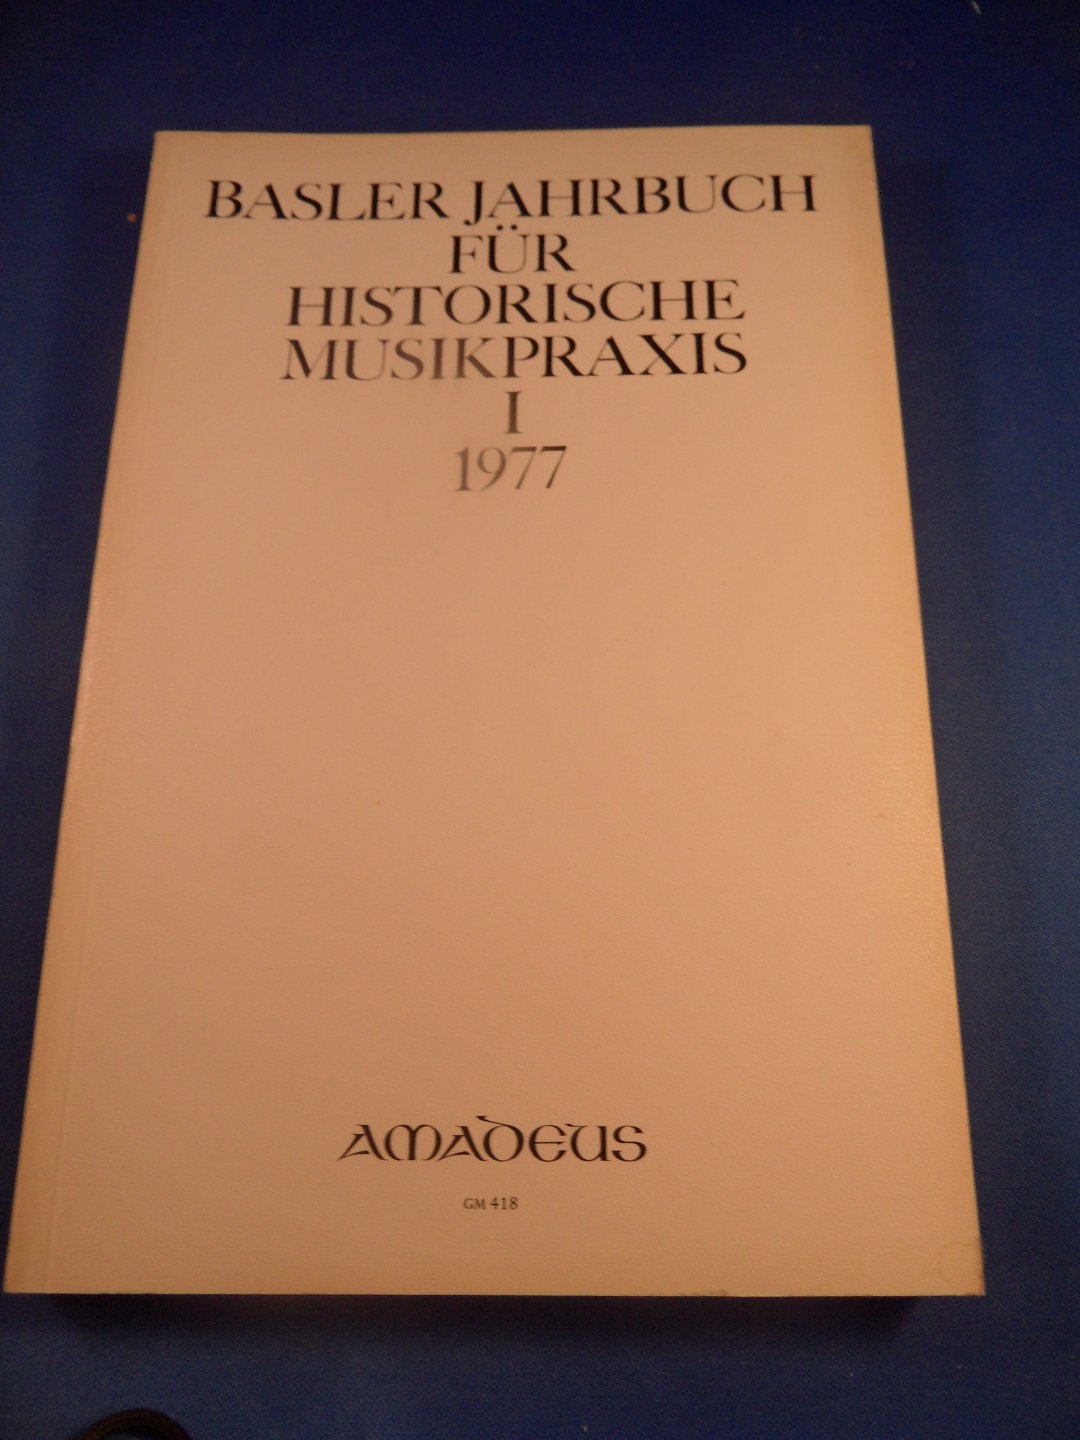  - Basler Jahrbuch für historische Musikpraxis I 1977